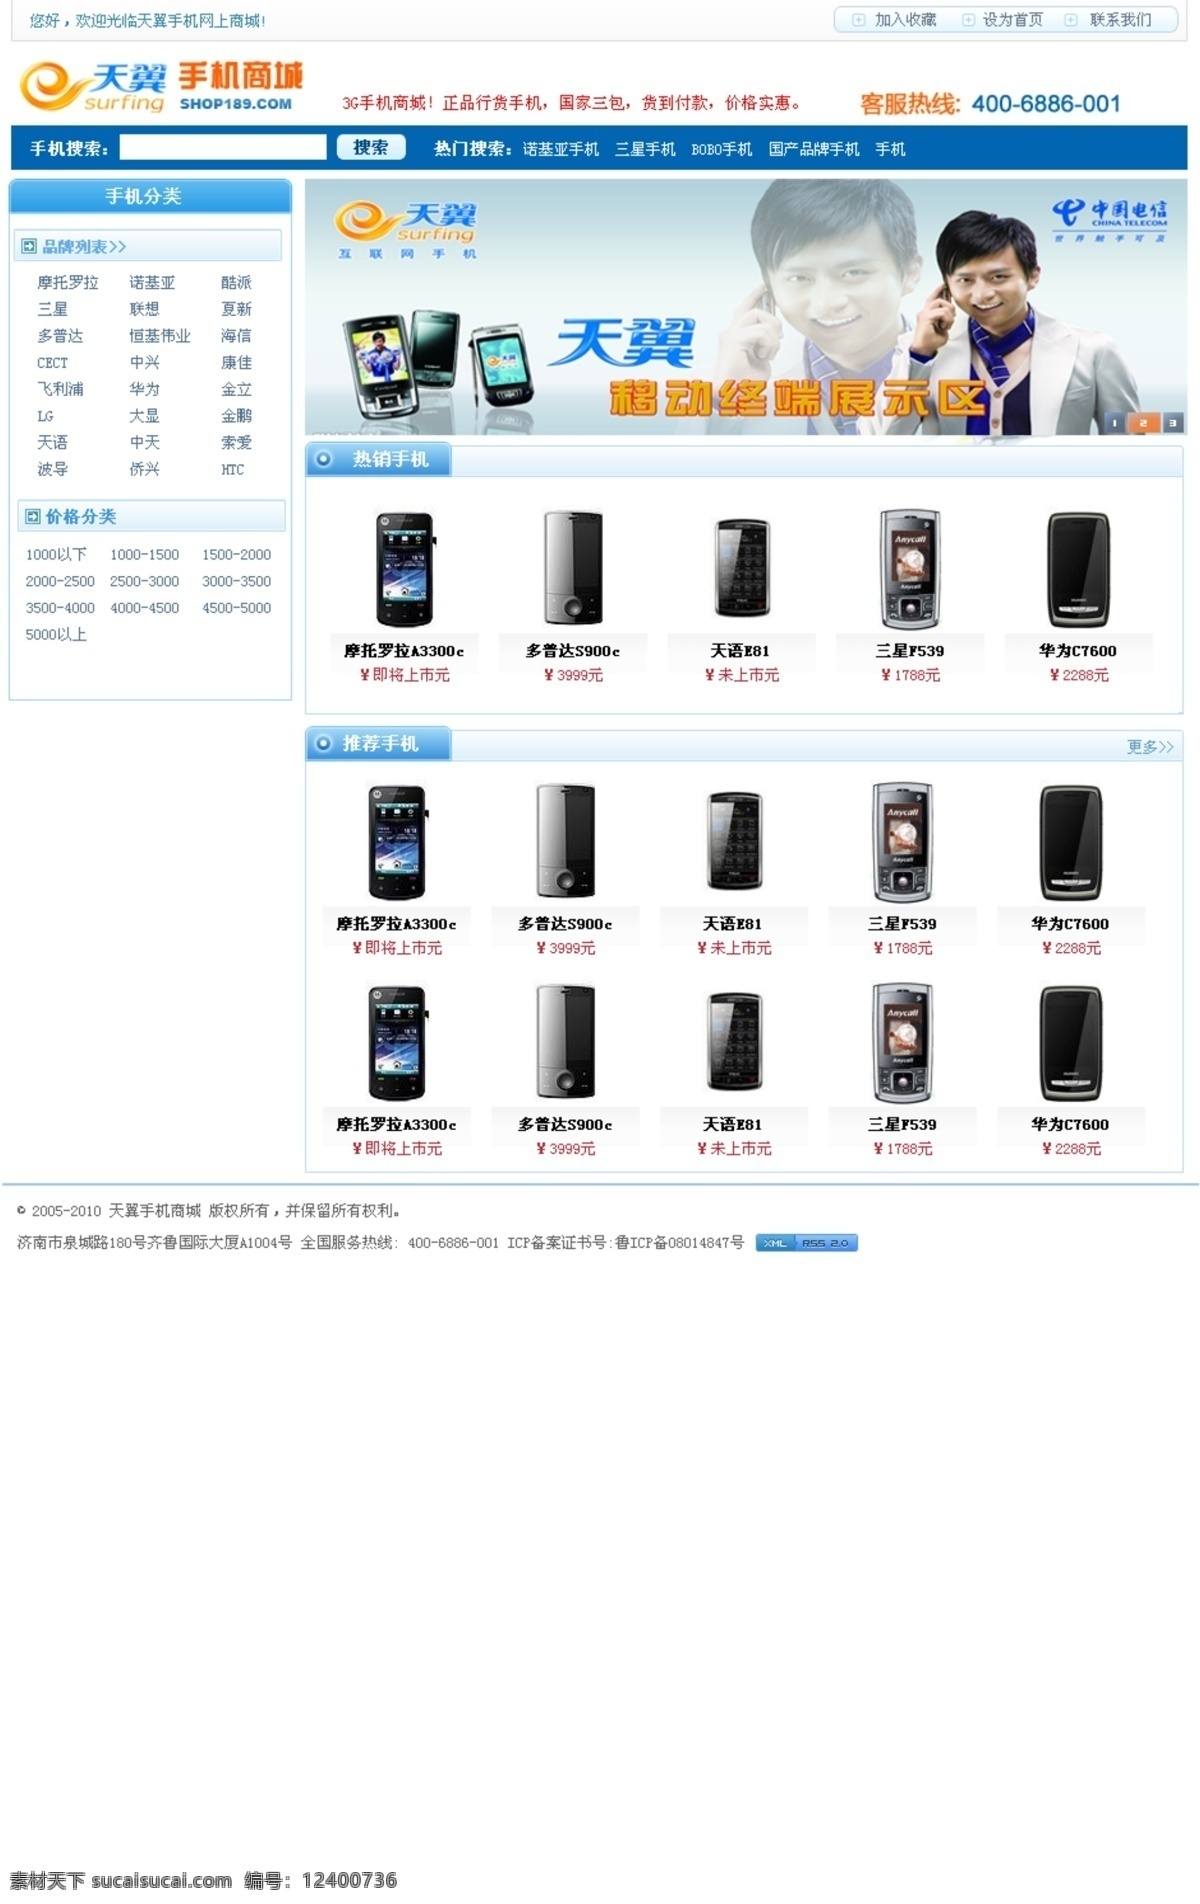 电信 3g 电信3g 网页模板 源文件 中文模版 电信3g手机 手机 商城 cdma2000 流行模板 矢量图 现代科技